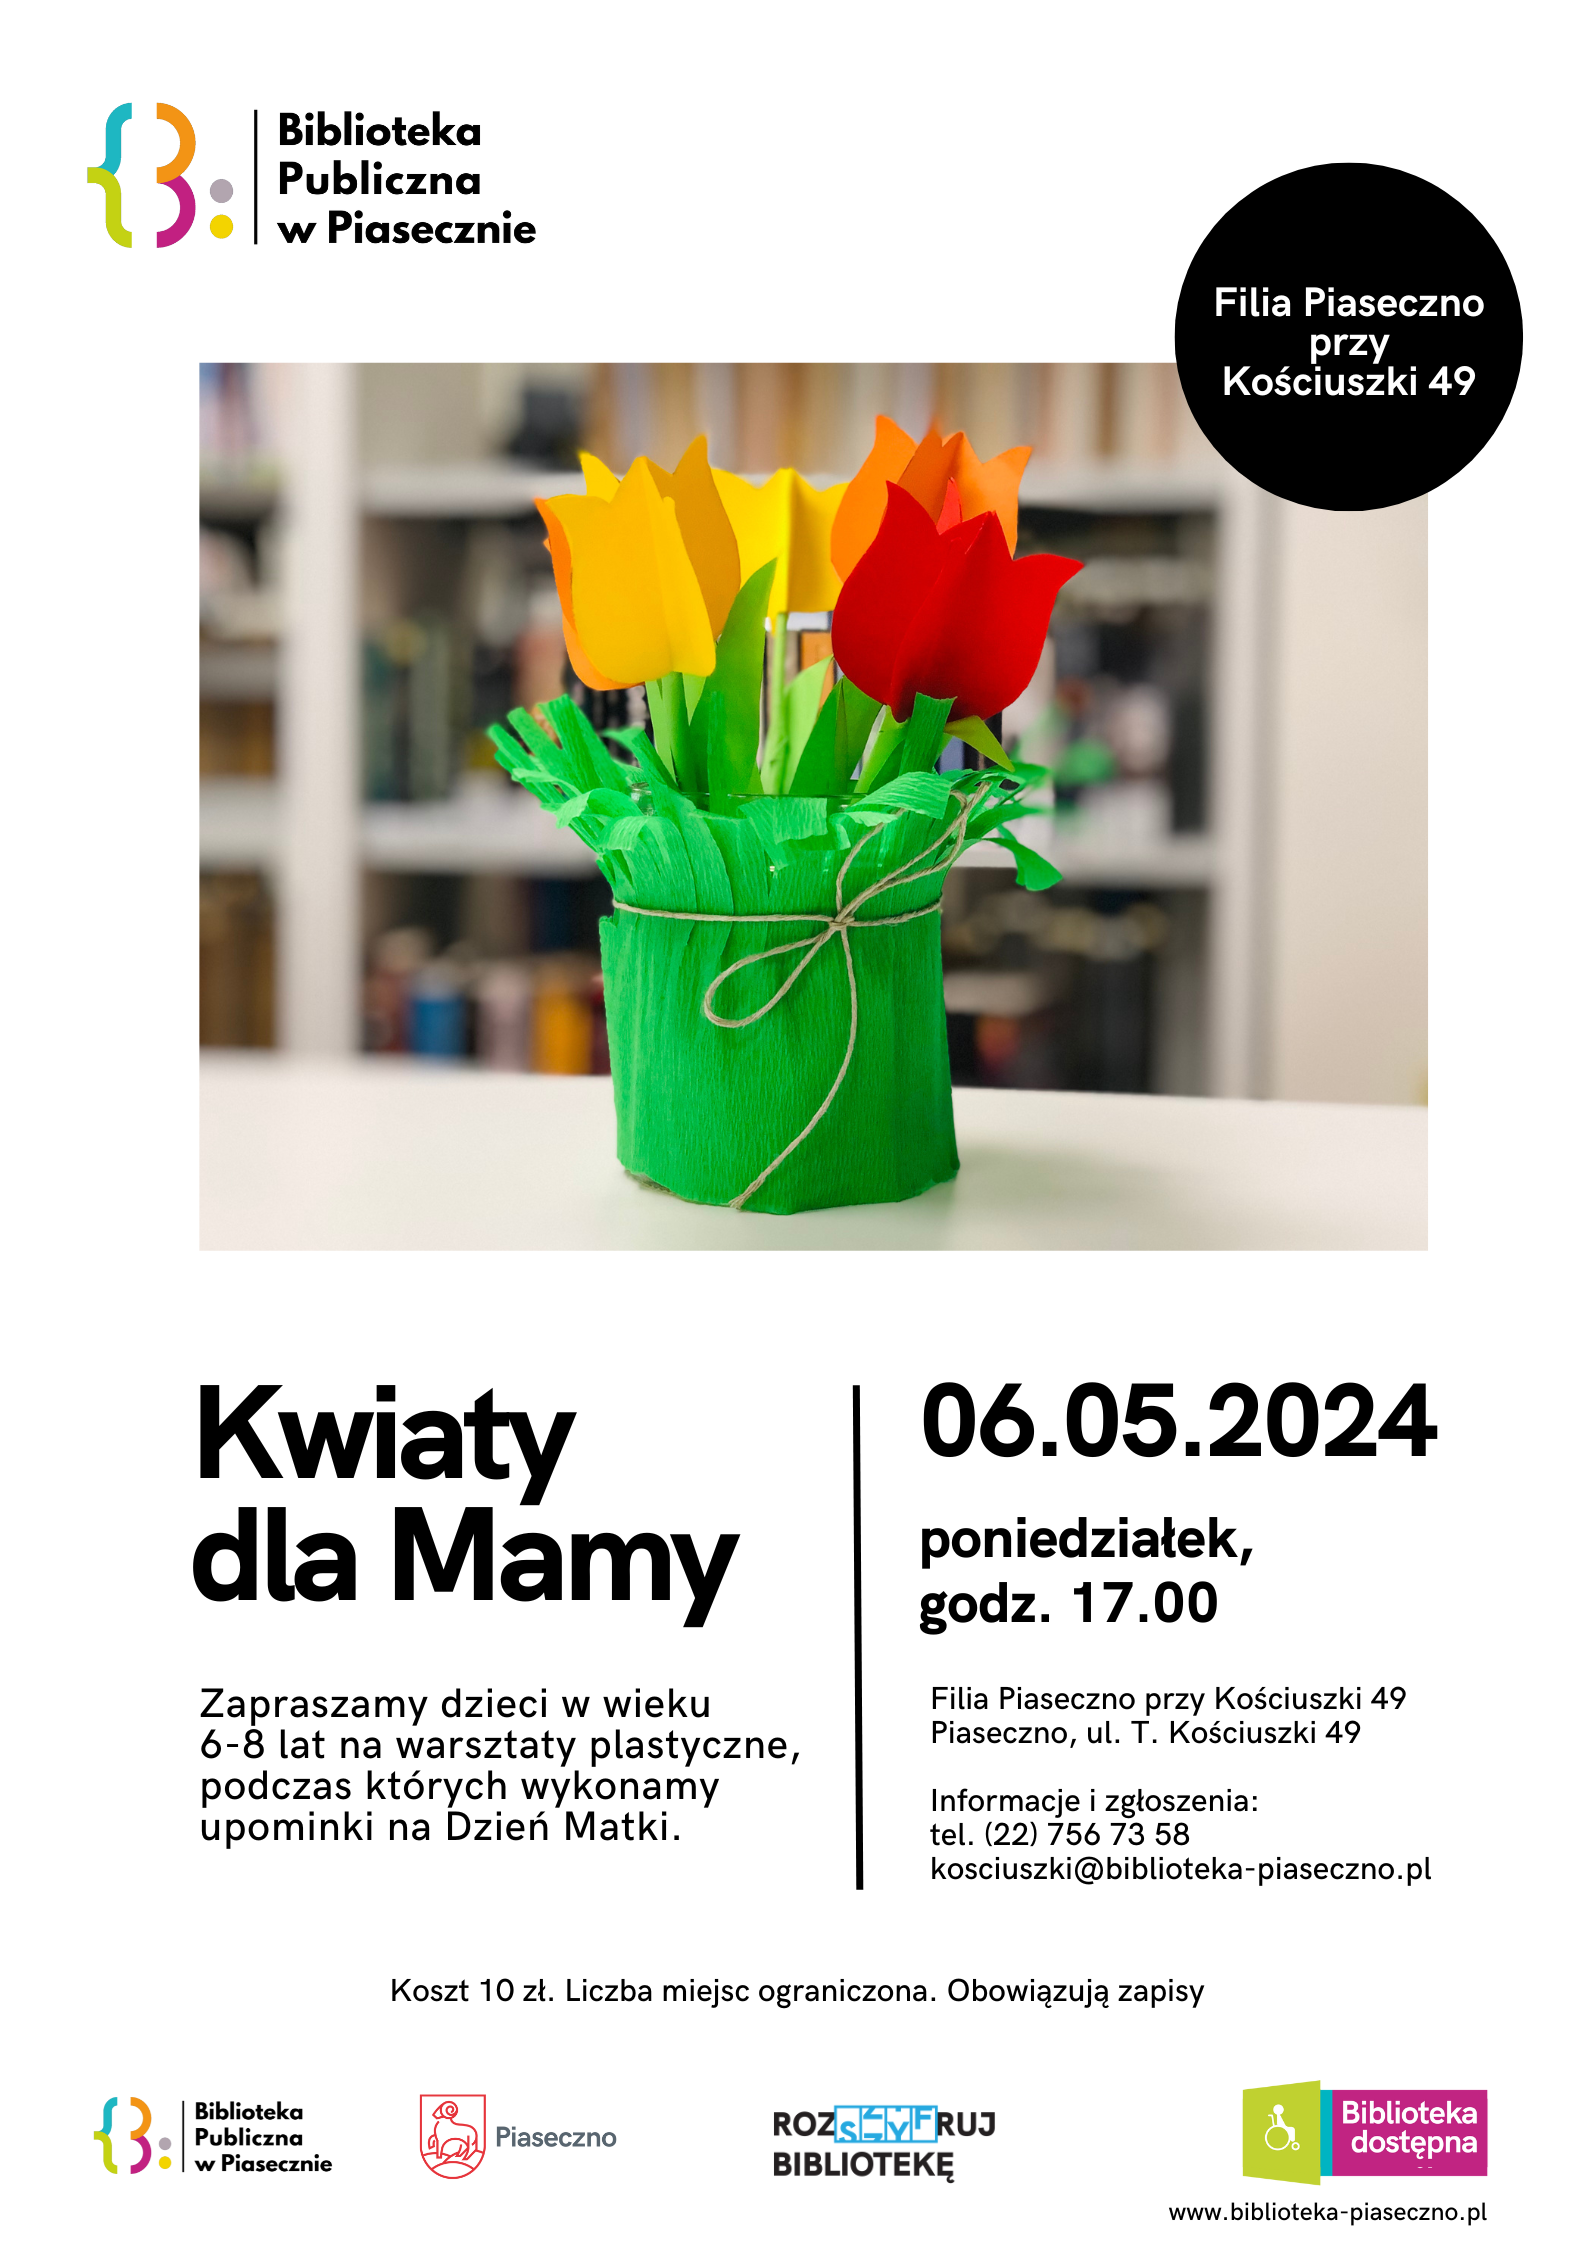 Plakat promujący warsztaty plastyczne Kwiaty dla Mamy